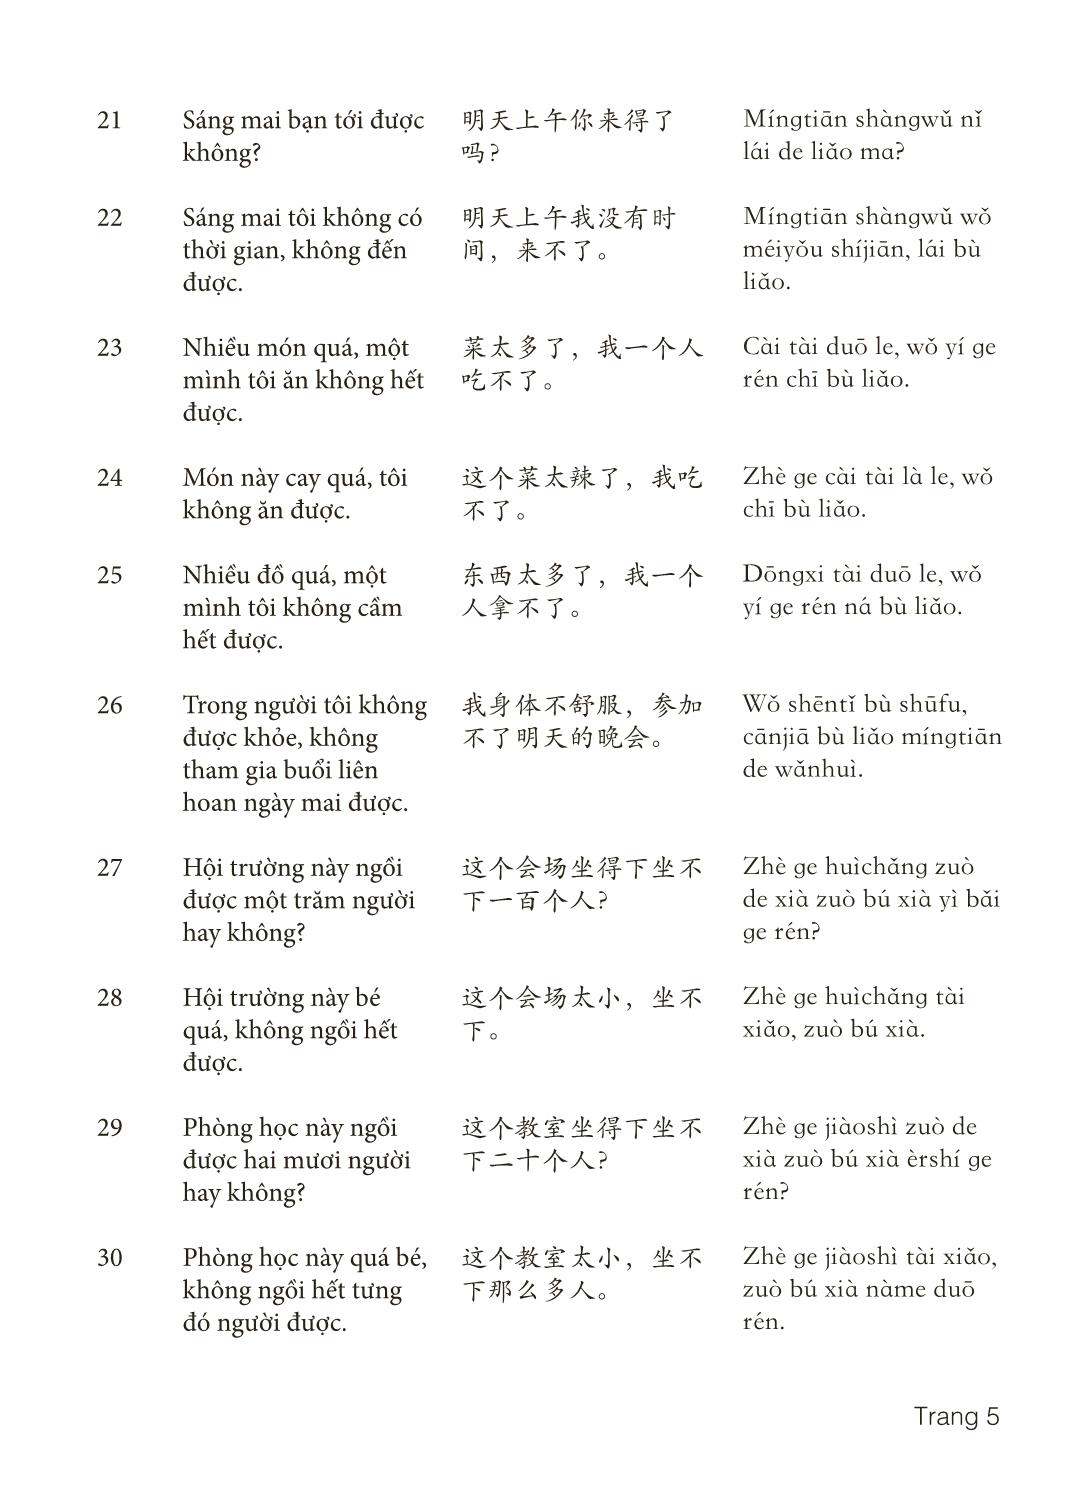 3000 Câu đàm thoại tiếng Hoa - Phần 24 trang 5